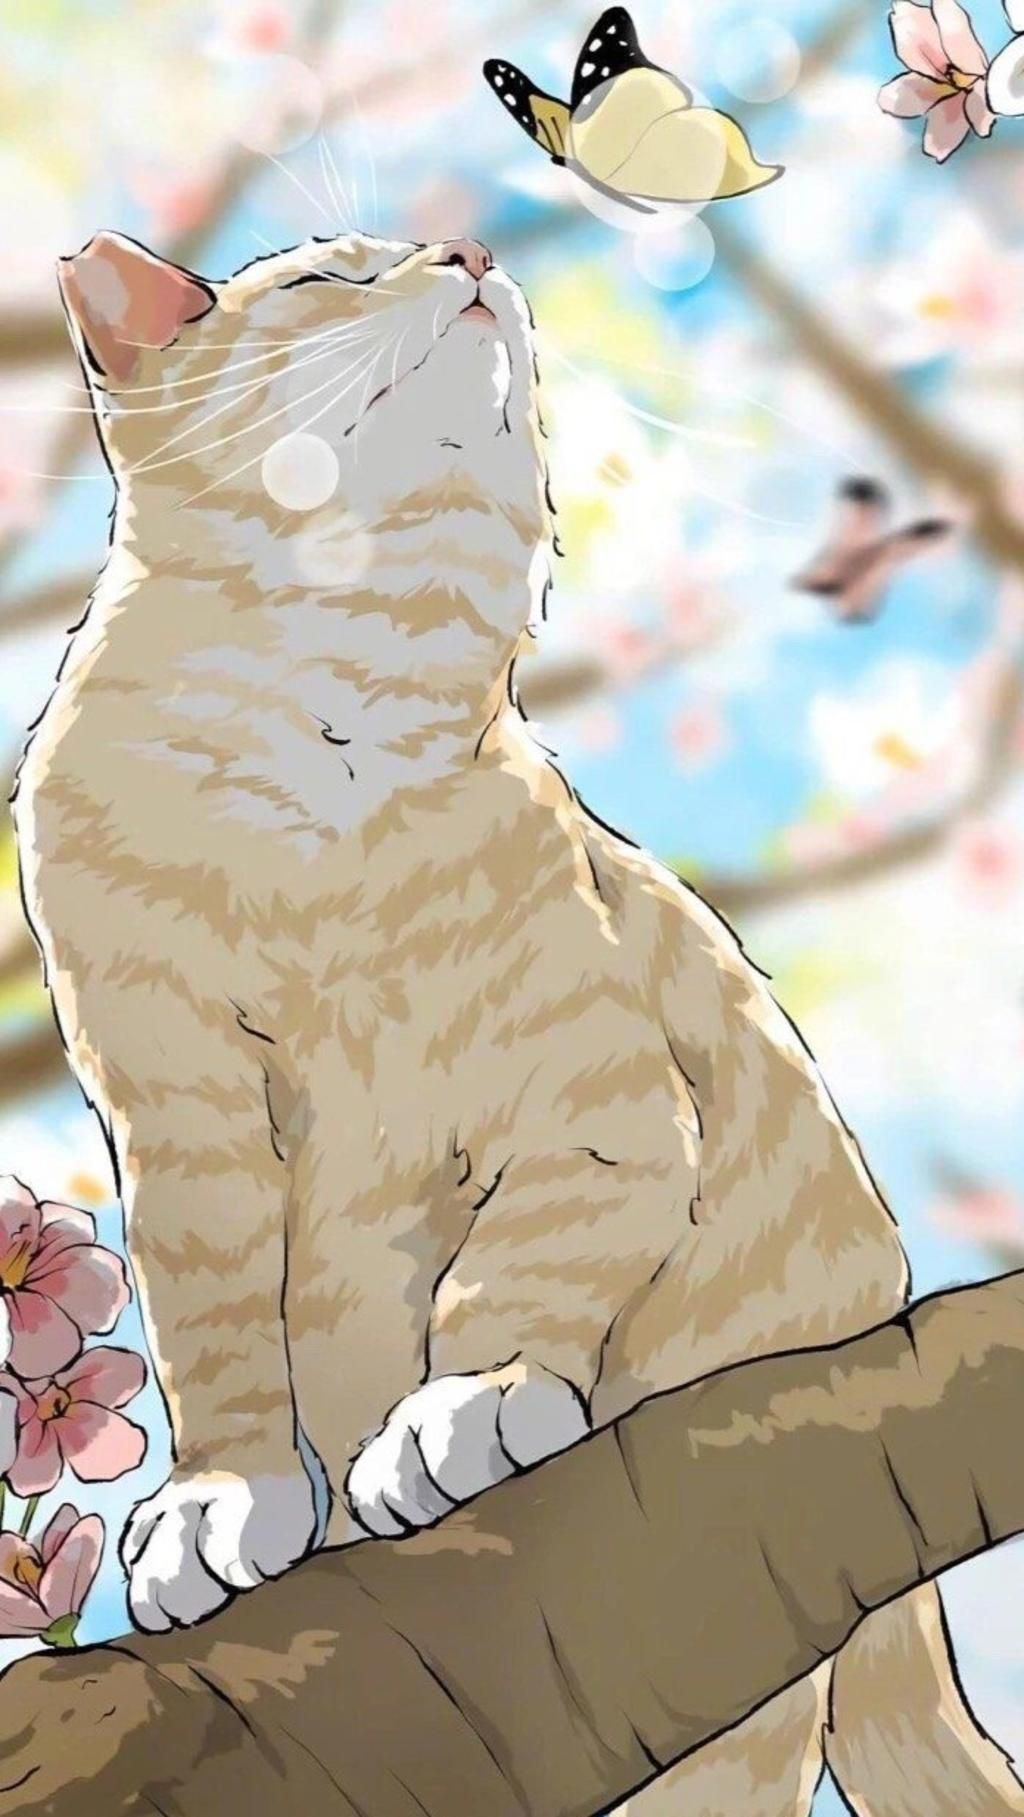 Bạn yêu thích những nhân vật anime với ngoại hình đáng yêu? Hãy thử chiêm ngưỡng bức vẽ mèo anime nổi tiếng này để tìm thêm cảm hứng và tạo ra những bức tranh đáng yêu nhất.